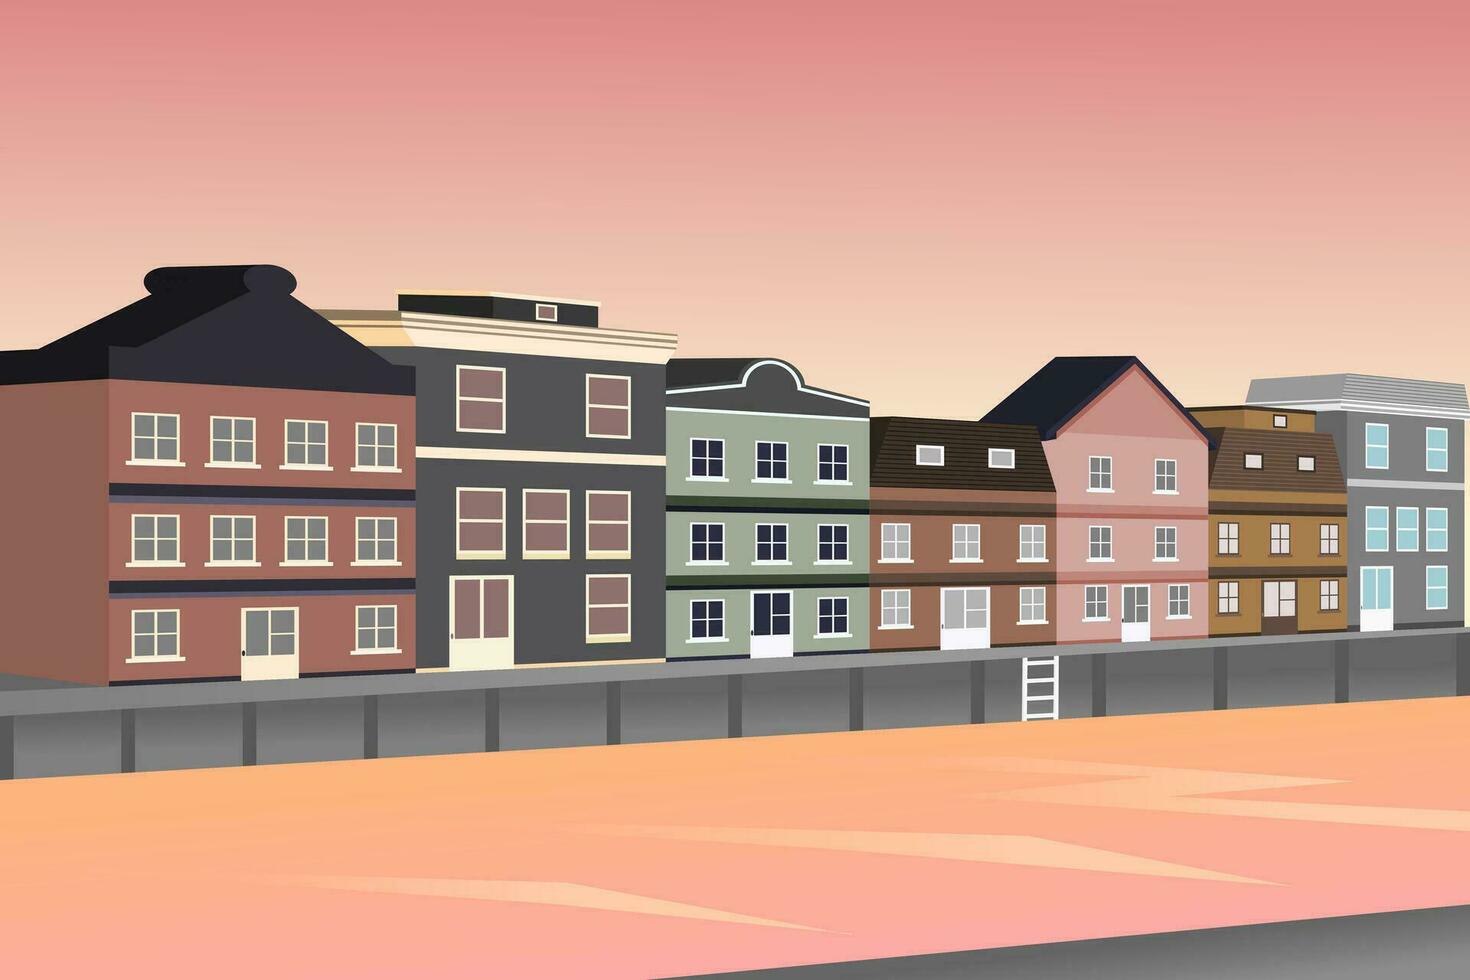 amsterdam paesaggio urbano con antico case e acqua canali a tramonto. vettore illustrazione.